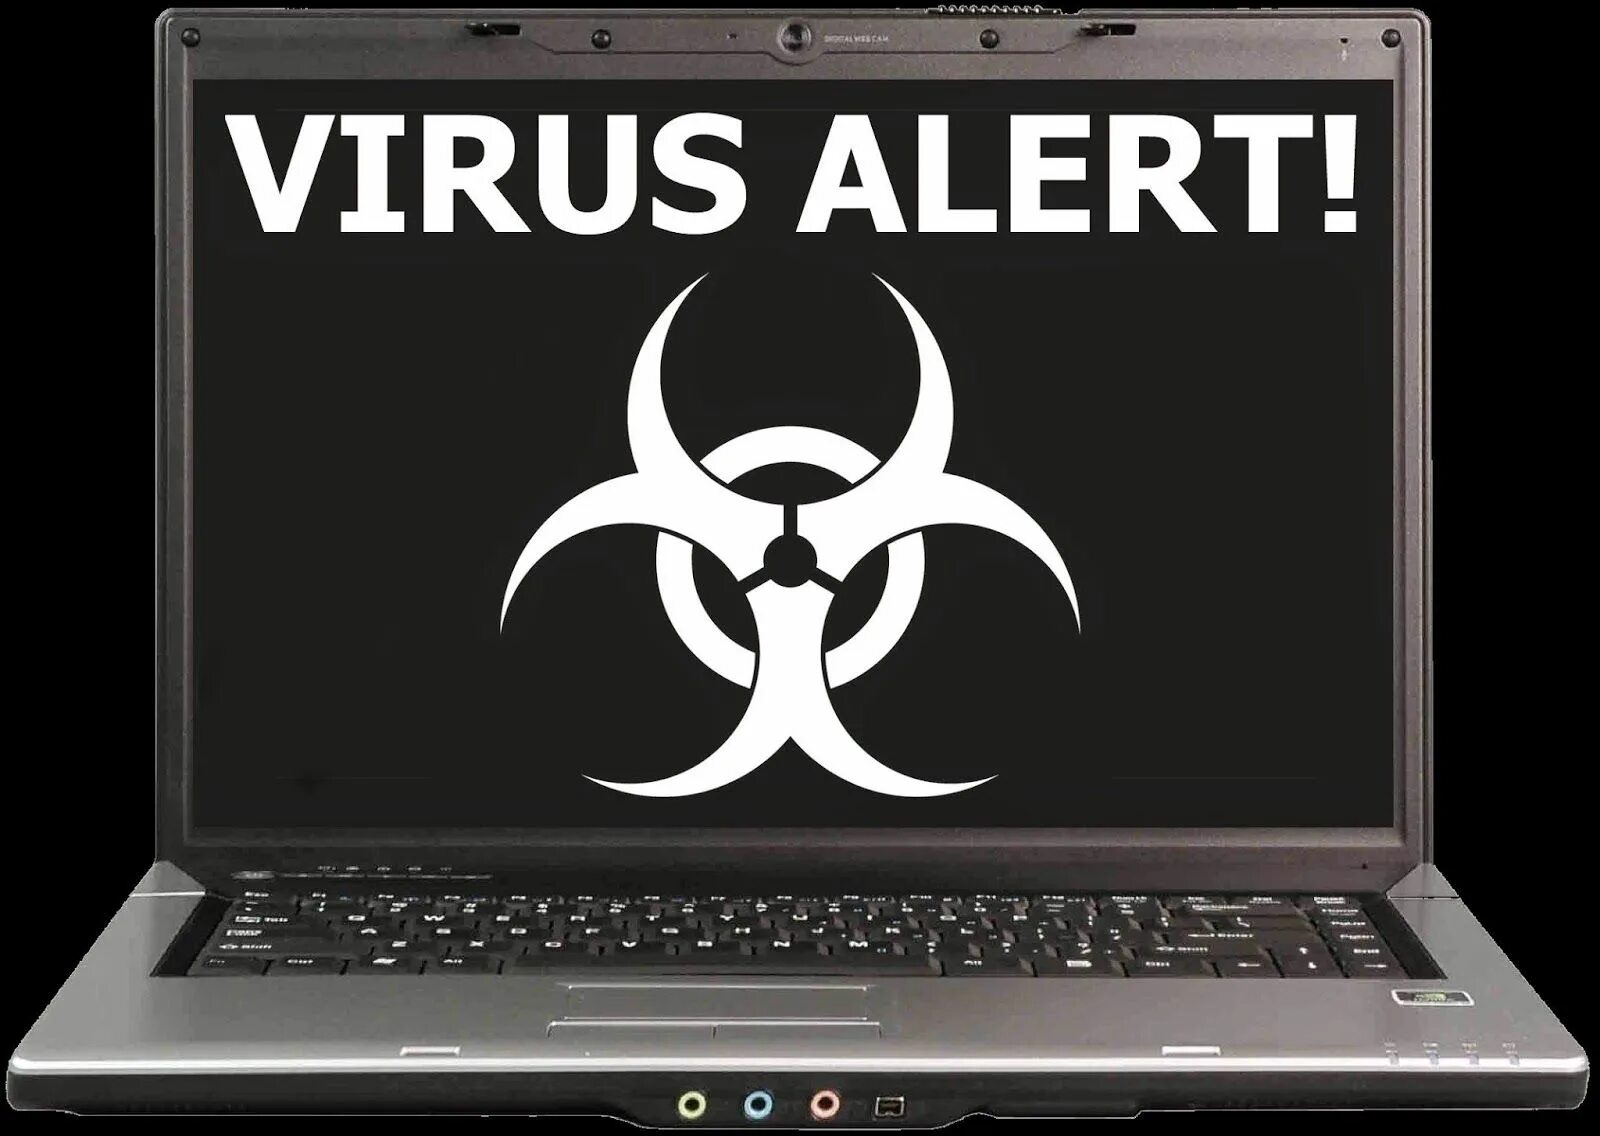 Комп вирусы. Вирус на компьютере. Компьютерные вирусы картинки. Вирус в компьютере картинка. Computer virus is